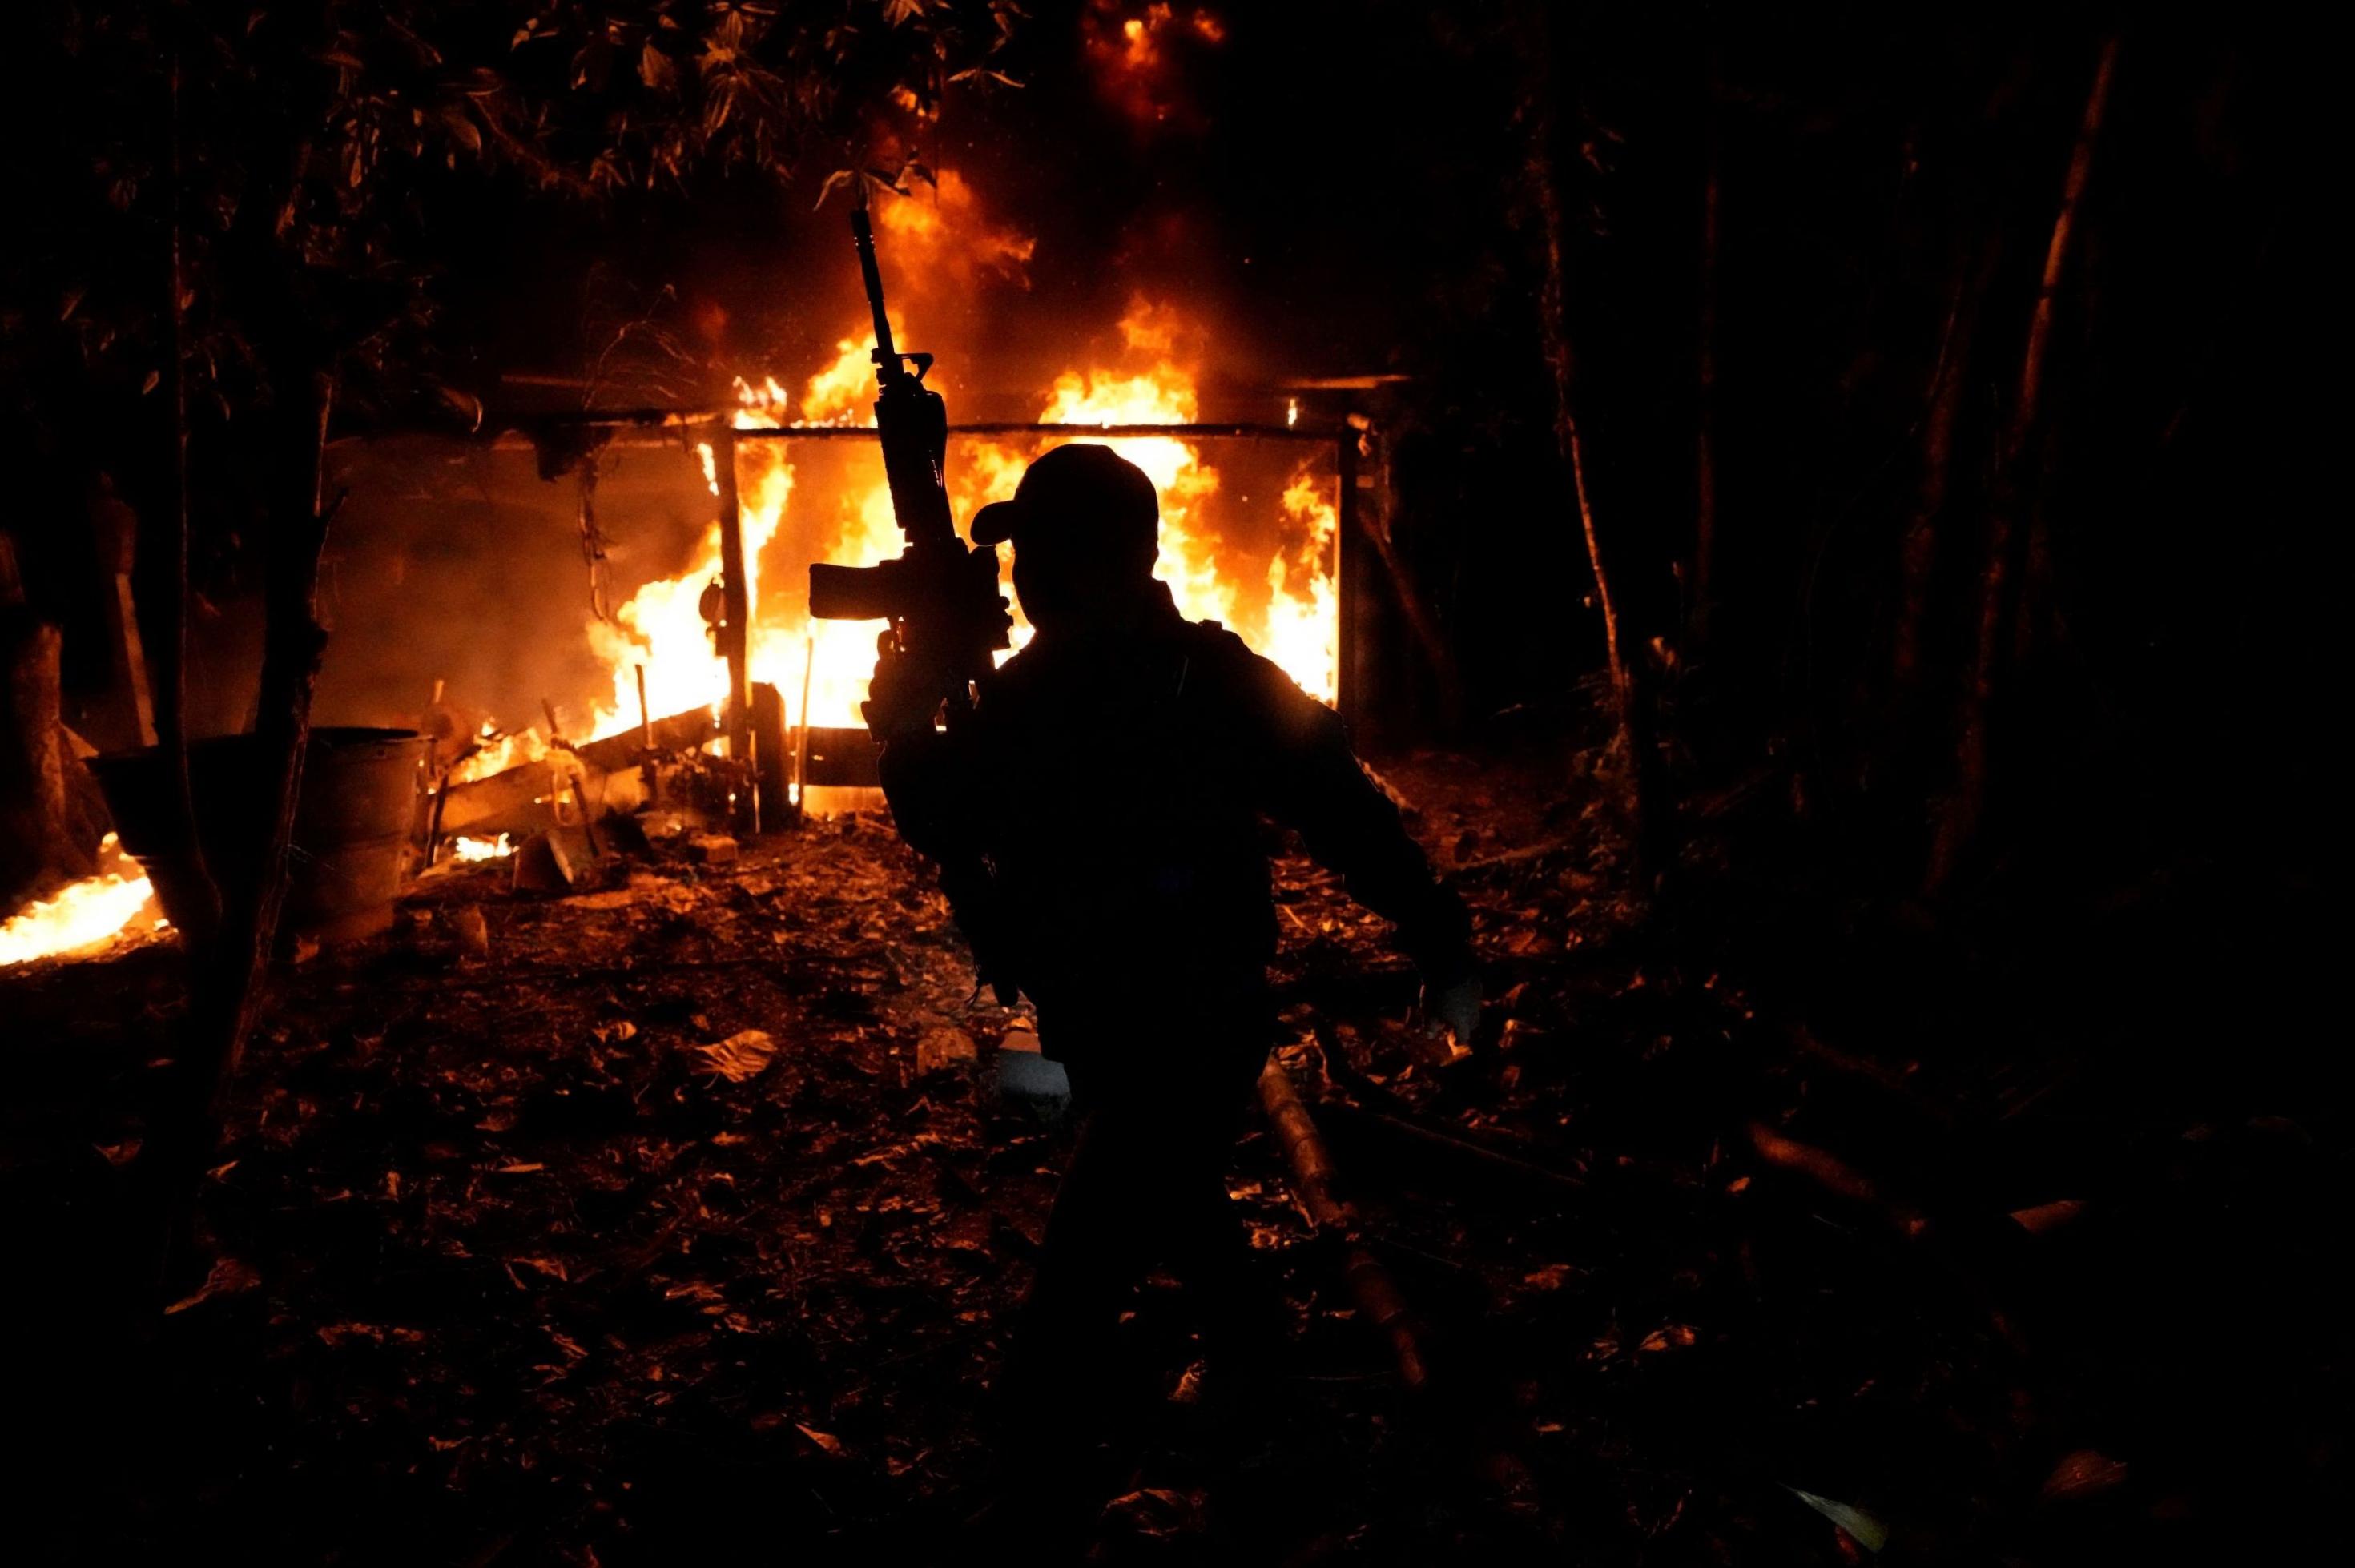 Vor dem Hintergrund eines im Dunkeln brennenden Hauses sieht man die Silhouette eines Mannes, der ein Maschinengewehr nach oben hält